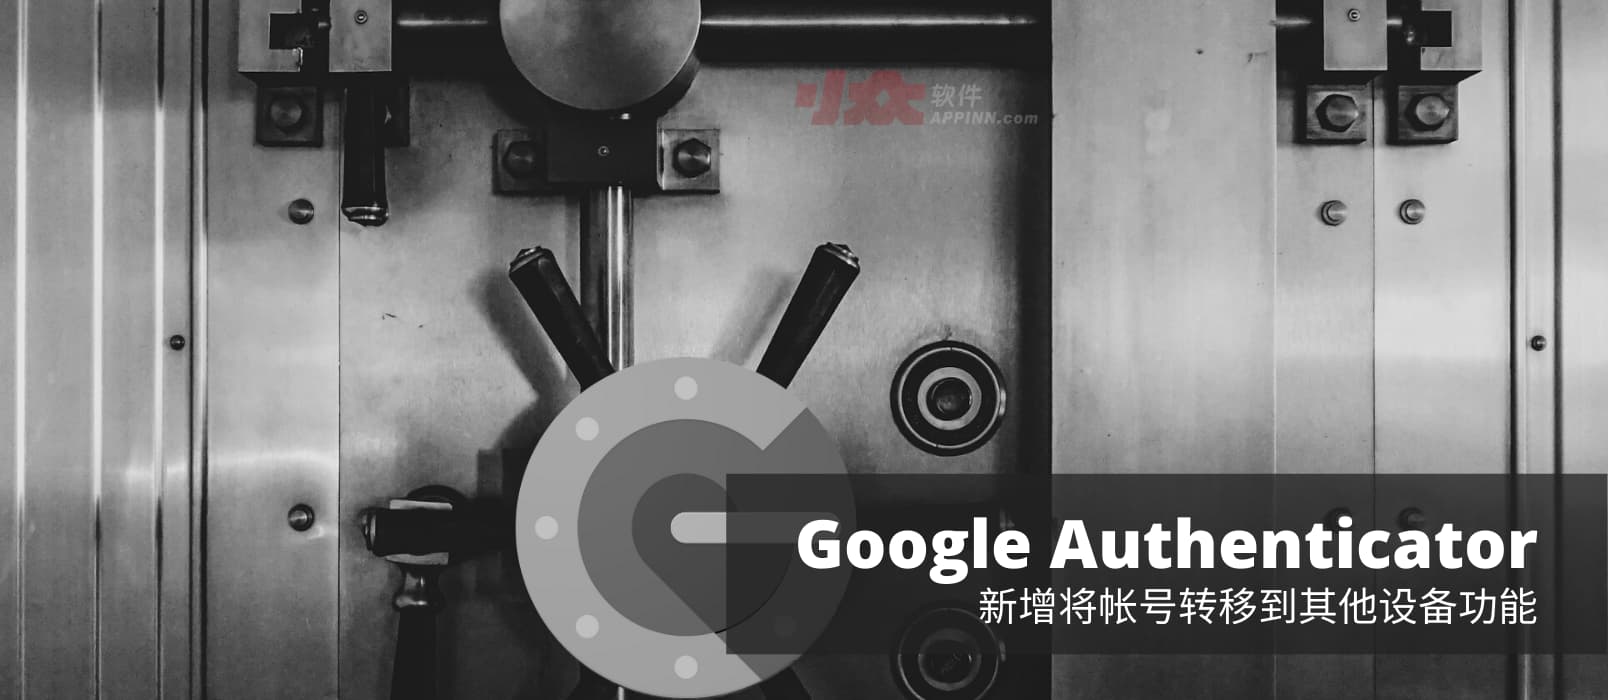 二次验证应用 Google Authenticator 支持转移帐号（验证码）功能，换机不再是噩梦[Android] 1